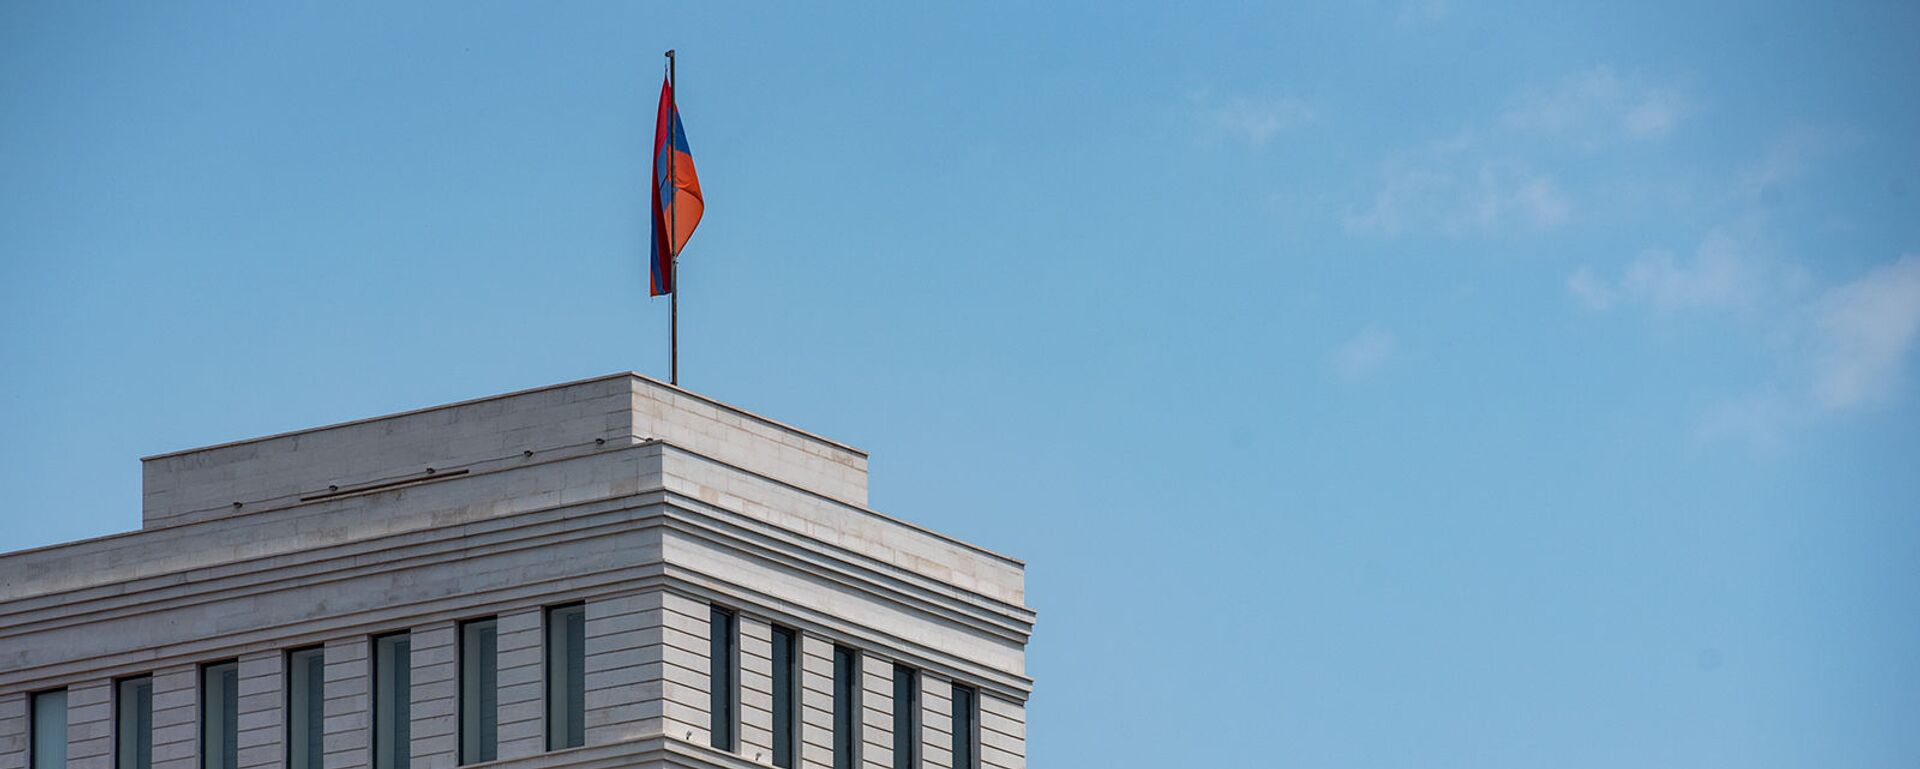 Здание Министерства иностранных дел Армении - Sputnik Արմենիա, 1920, 17.08.2021